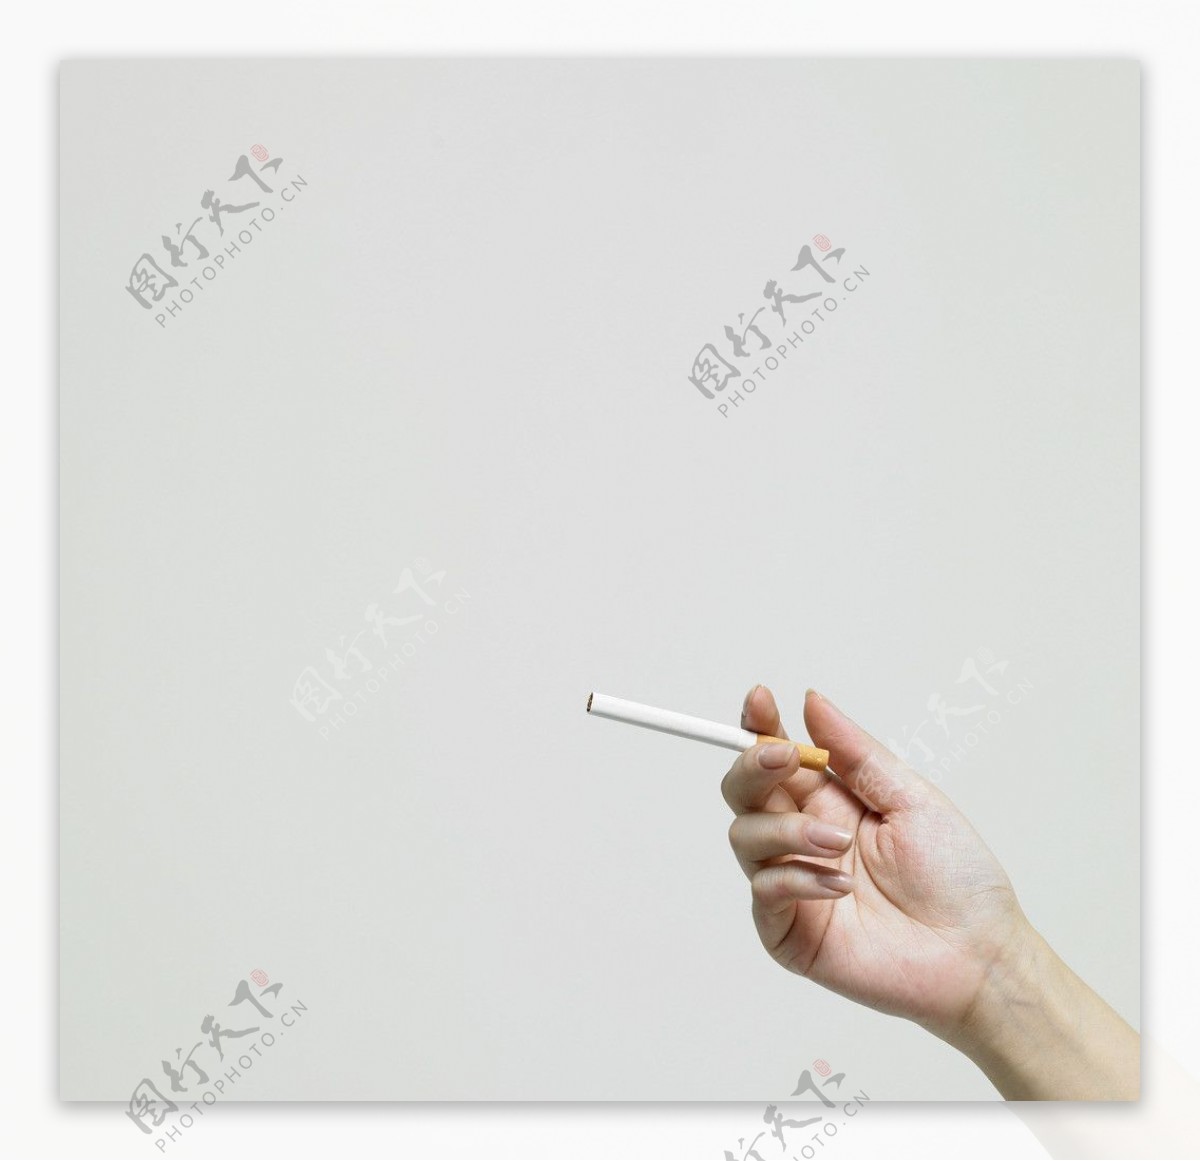 很有味道的抽烟的女人图片壁纸-壁纸图片大全